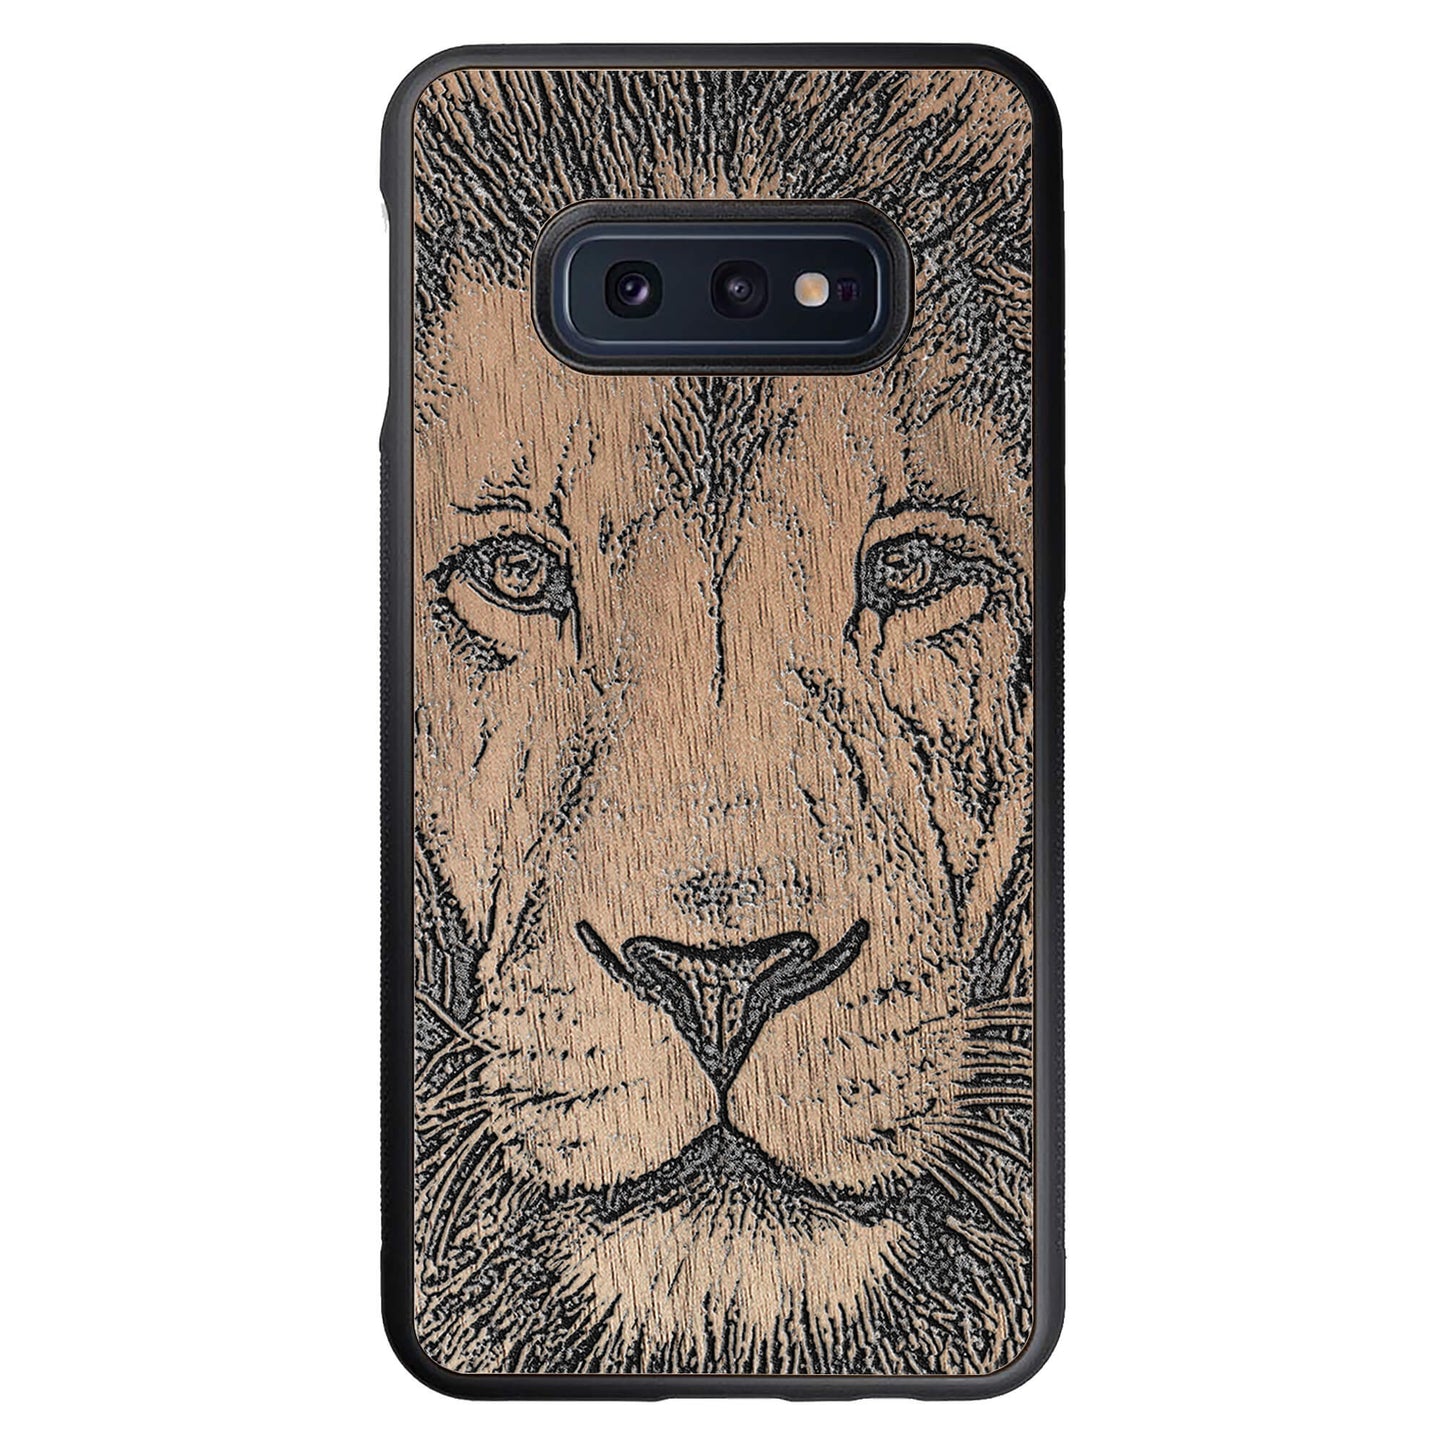 Wooden Case for Samsung Galaxy S10e Lion face